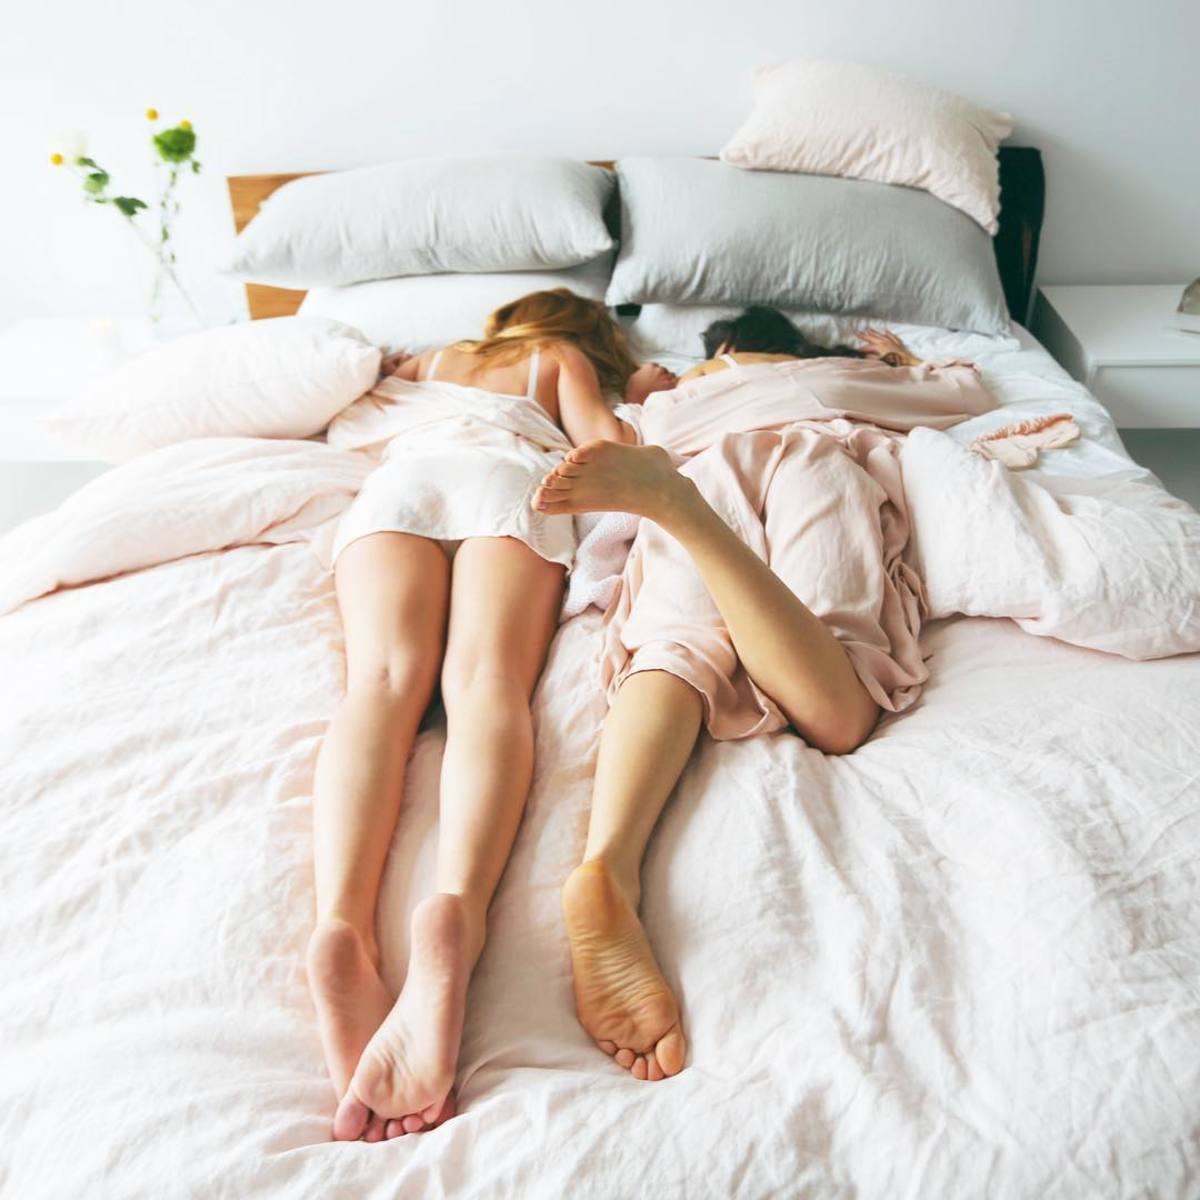 Sleep on a silk or satin pillowcase